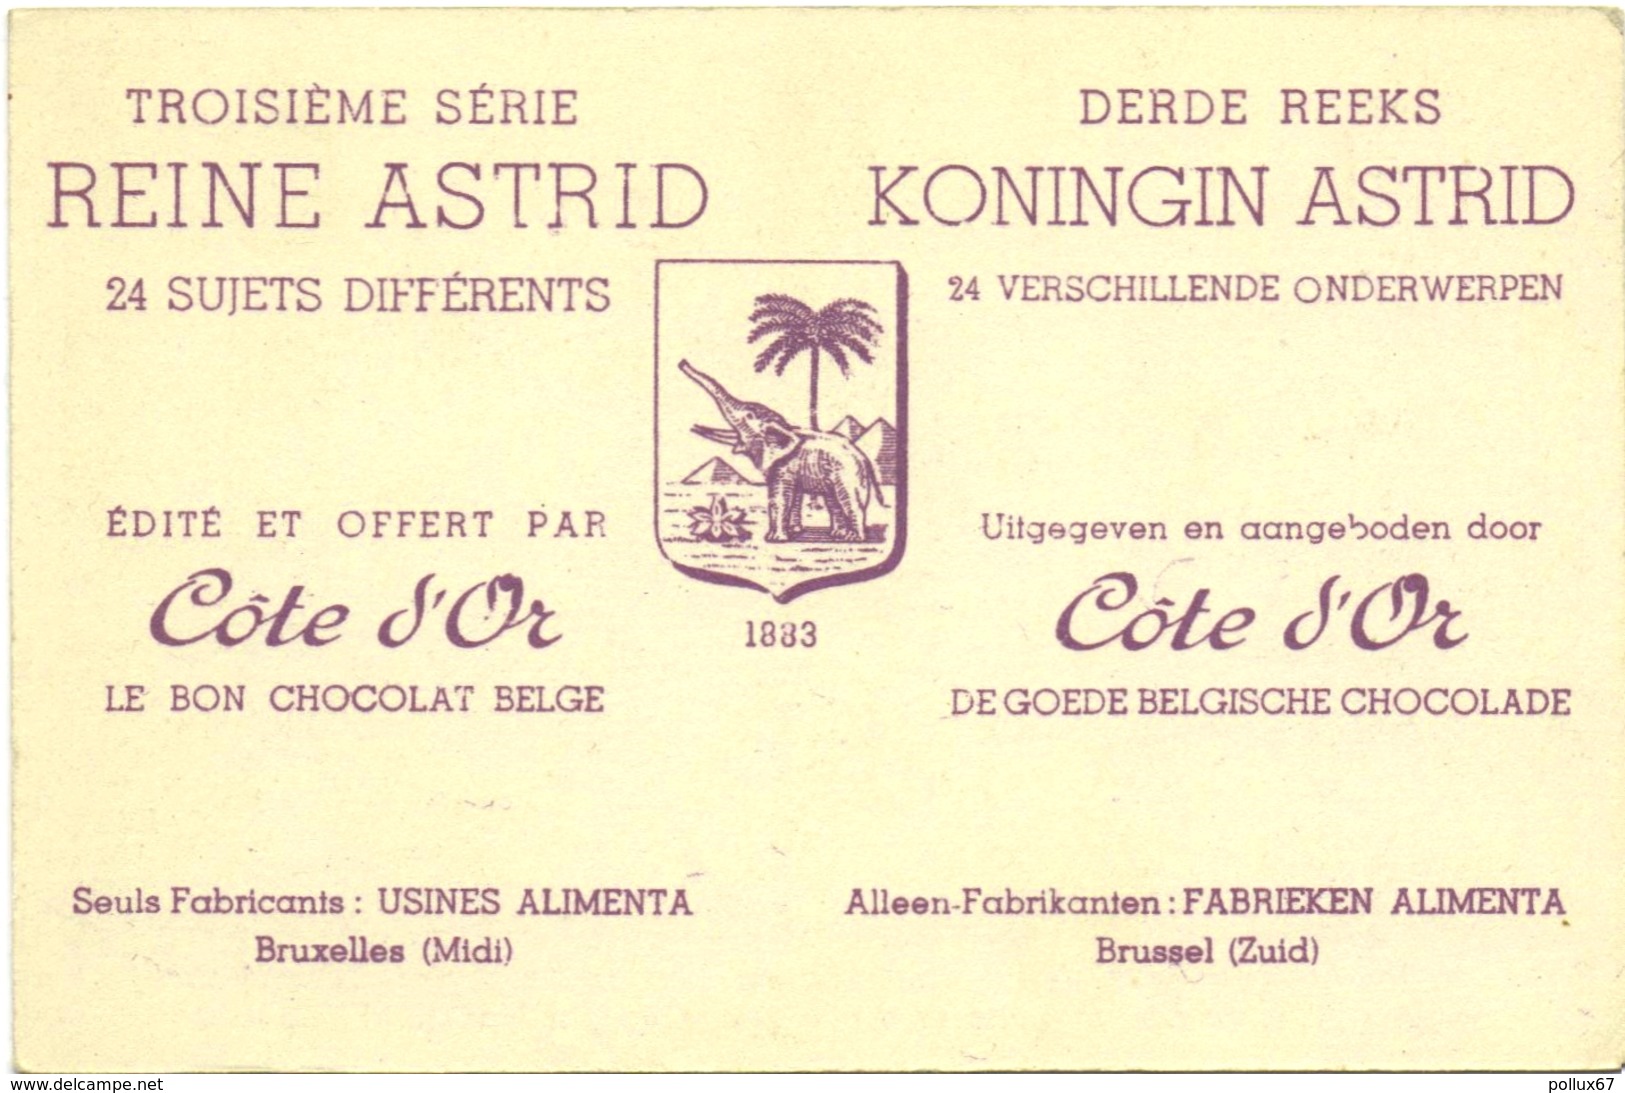 CARTE IMAGE PUBLICITAIRE CHOCOLAT CÔTE D'OR. TROISIEME SERIE : REINE ASTRID N° 6 - Chocolat